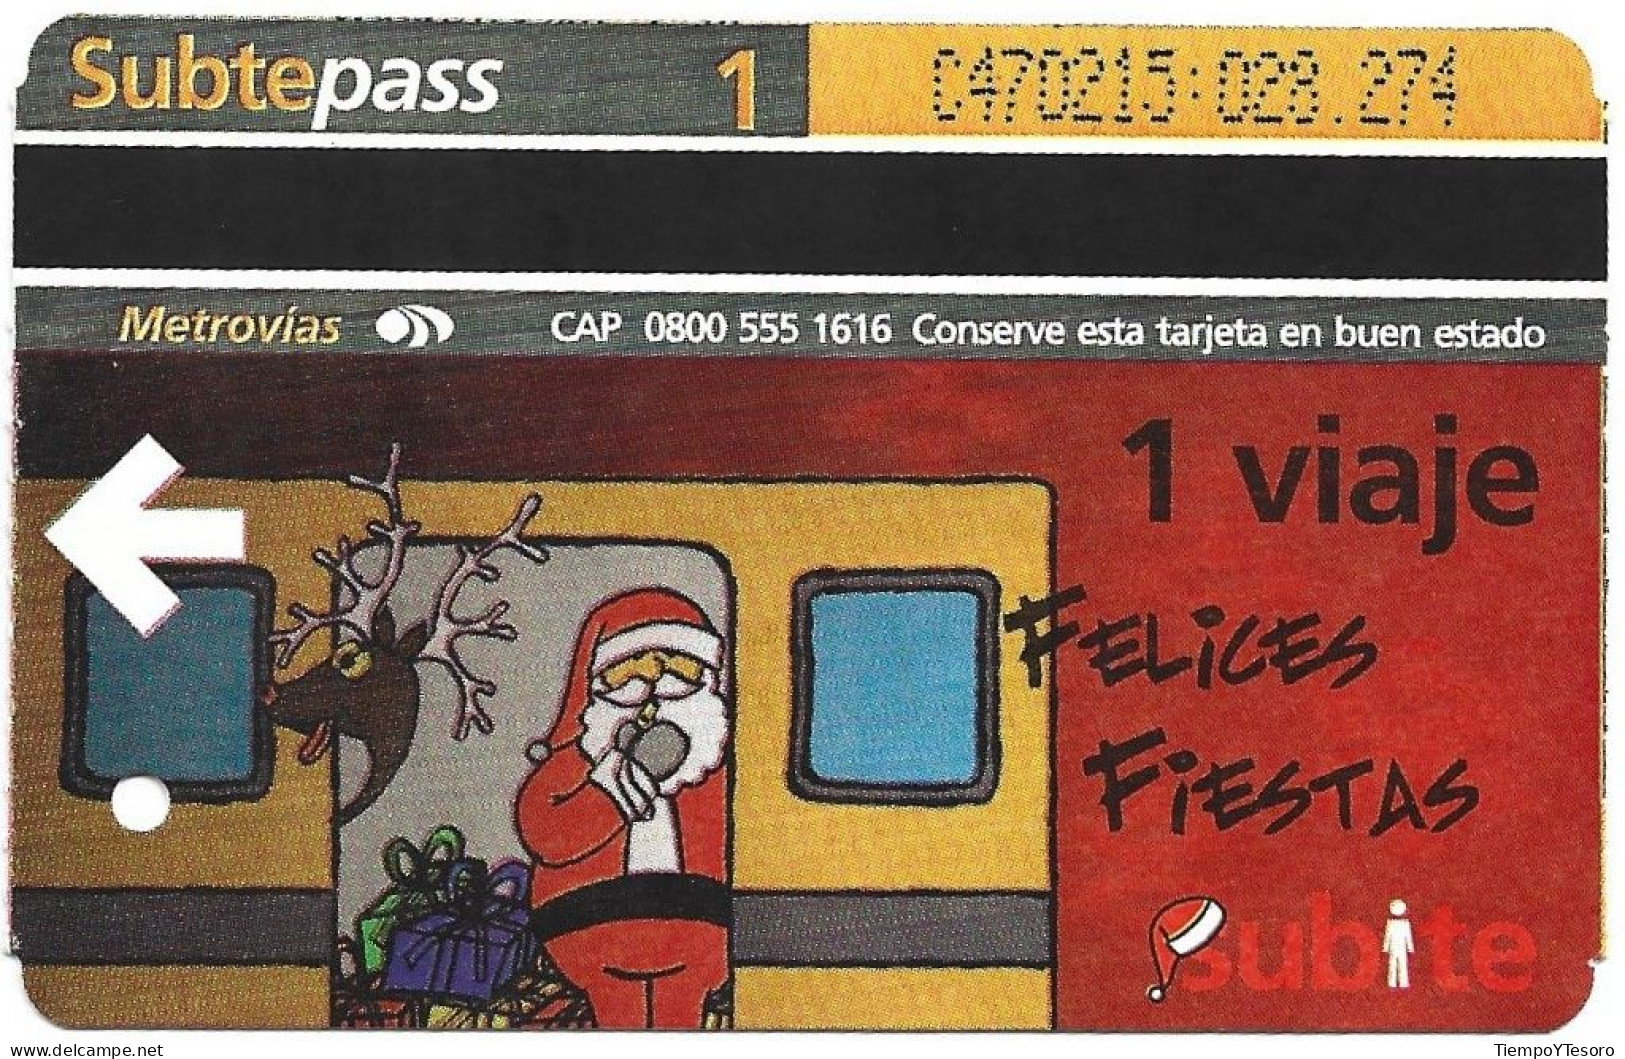 Subtepass - Holidays 4, N°1440 - Christmas